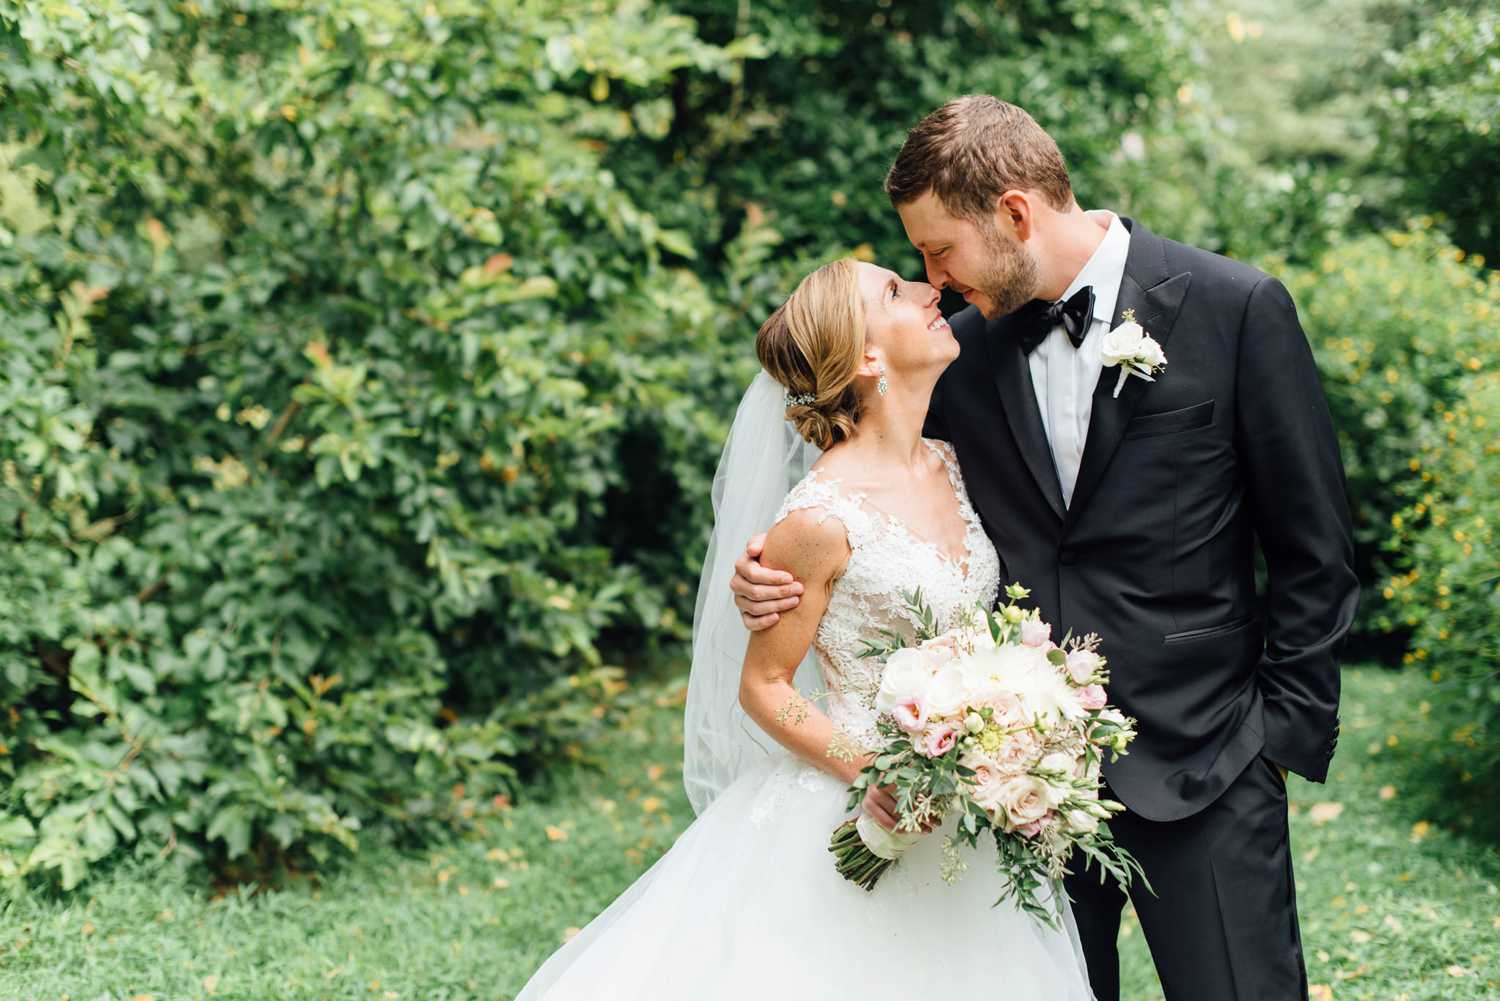 Rachel + Jeff - Tyler Arboretum Wedding - Philadelphia Wedding Photographer - Alison Dunn Photography photo